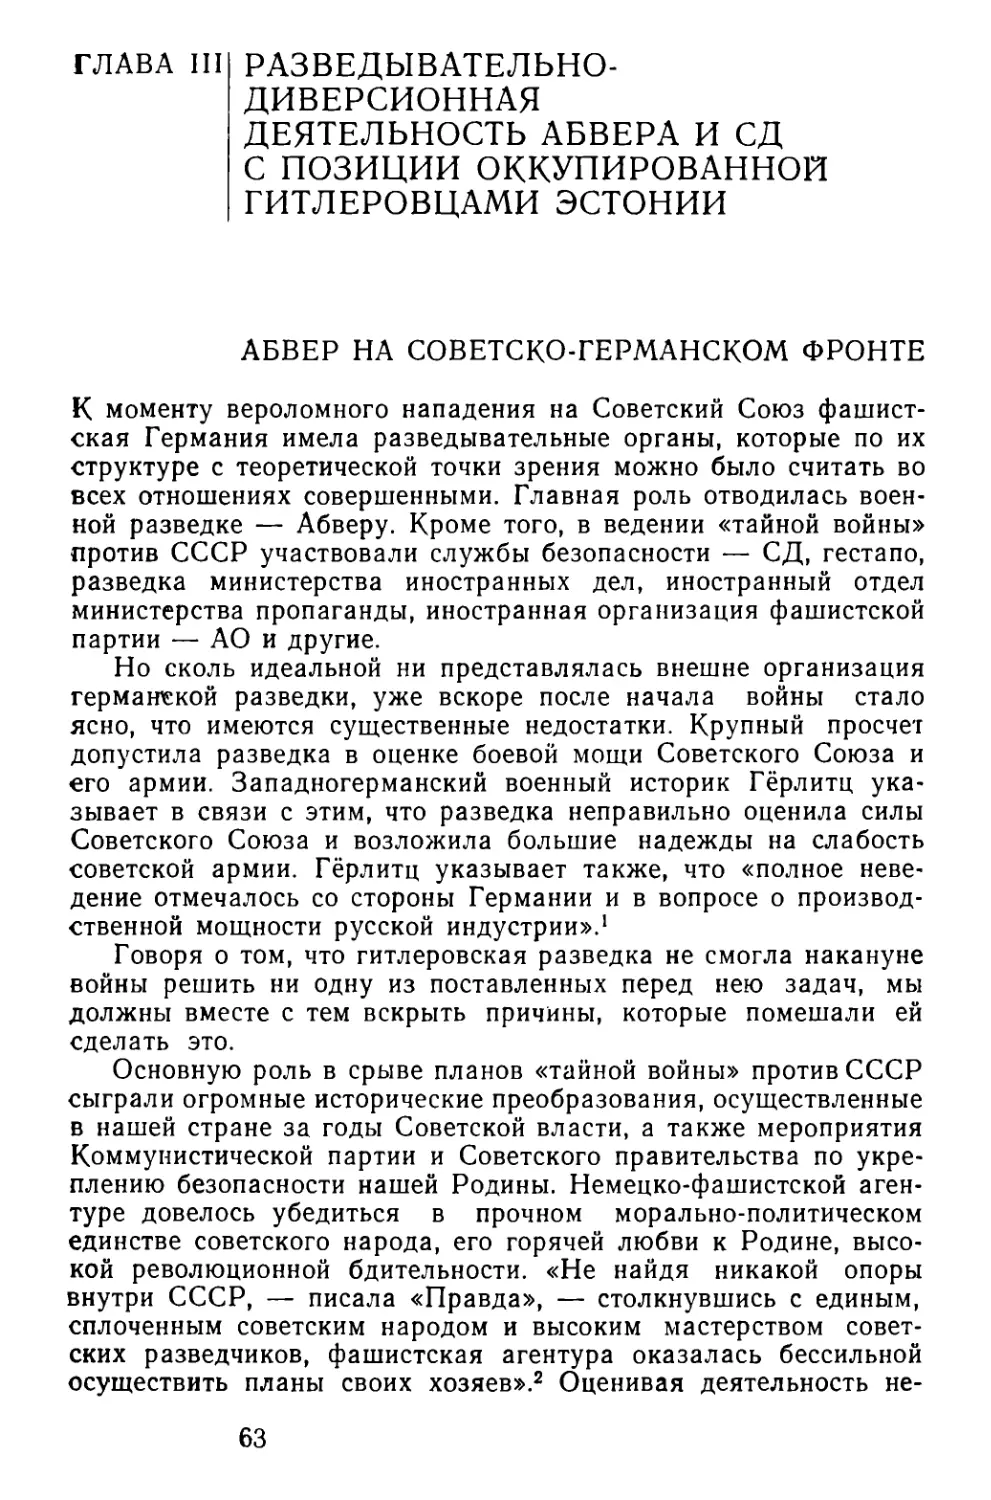 Глава III. Разведывательно-диверсионная деятельность Абвера и СД с позиции оккупированной гитлеровцами советской Эстонии